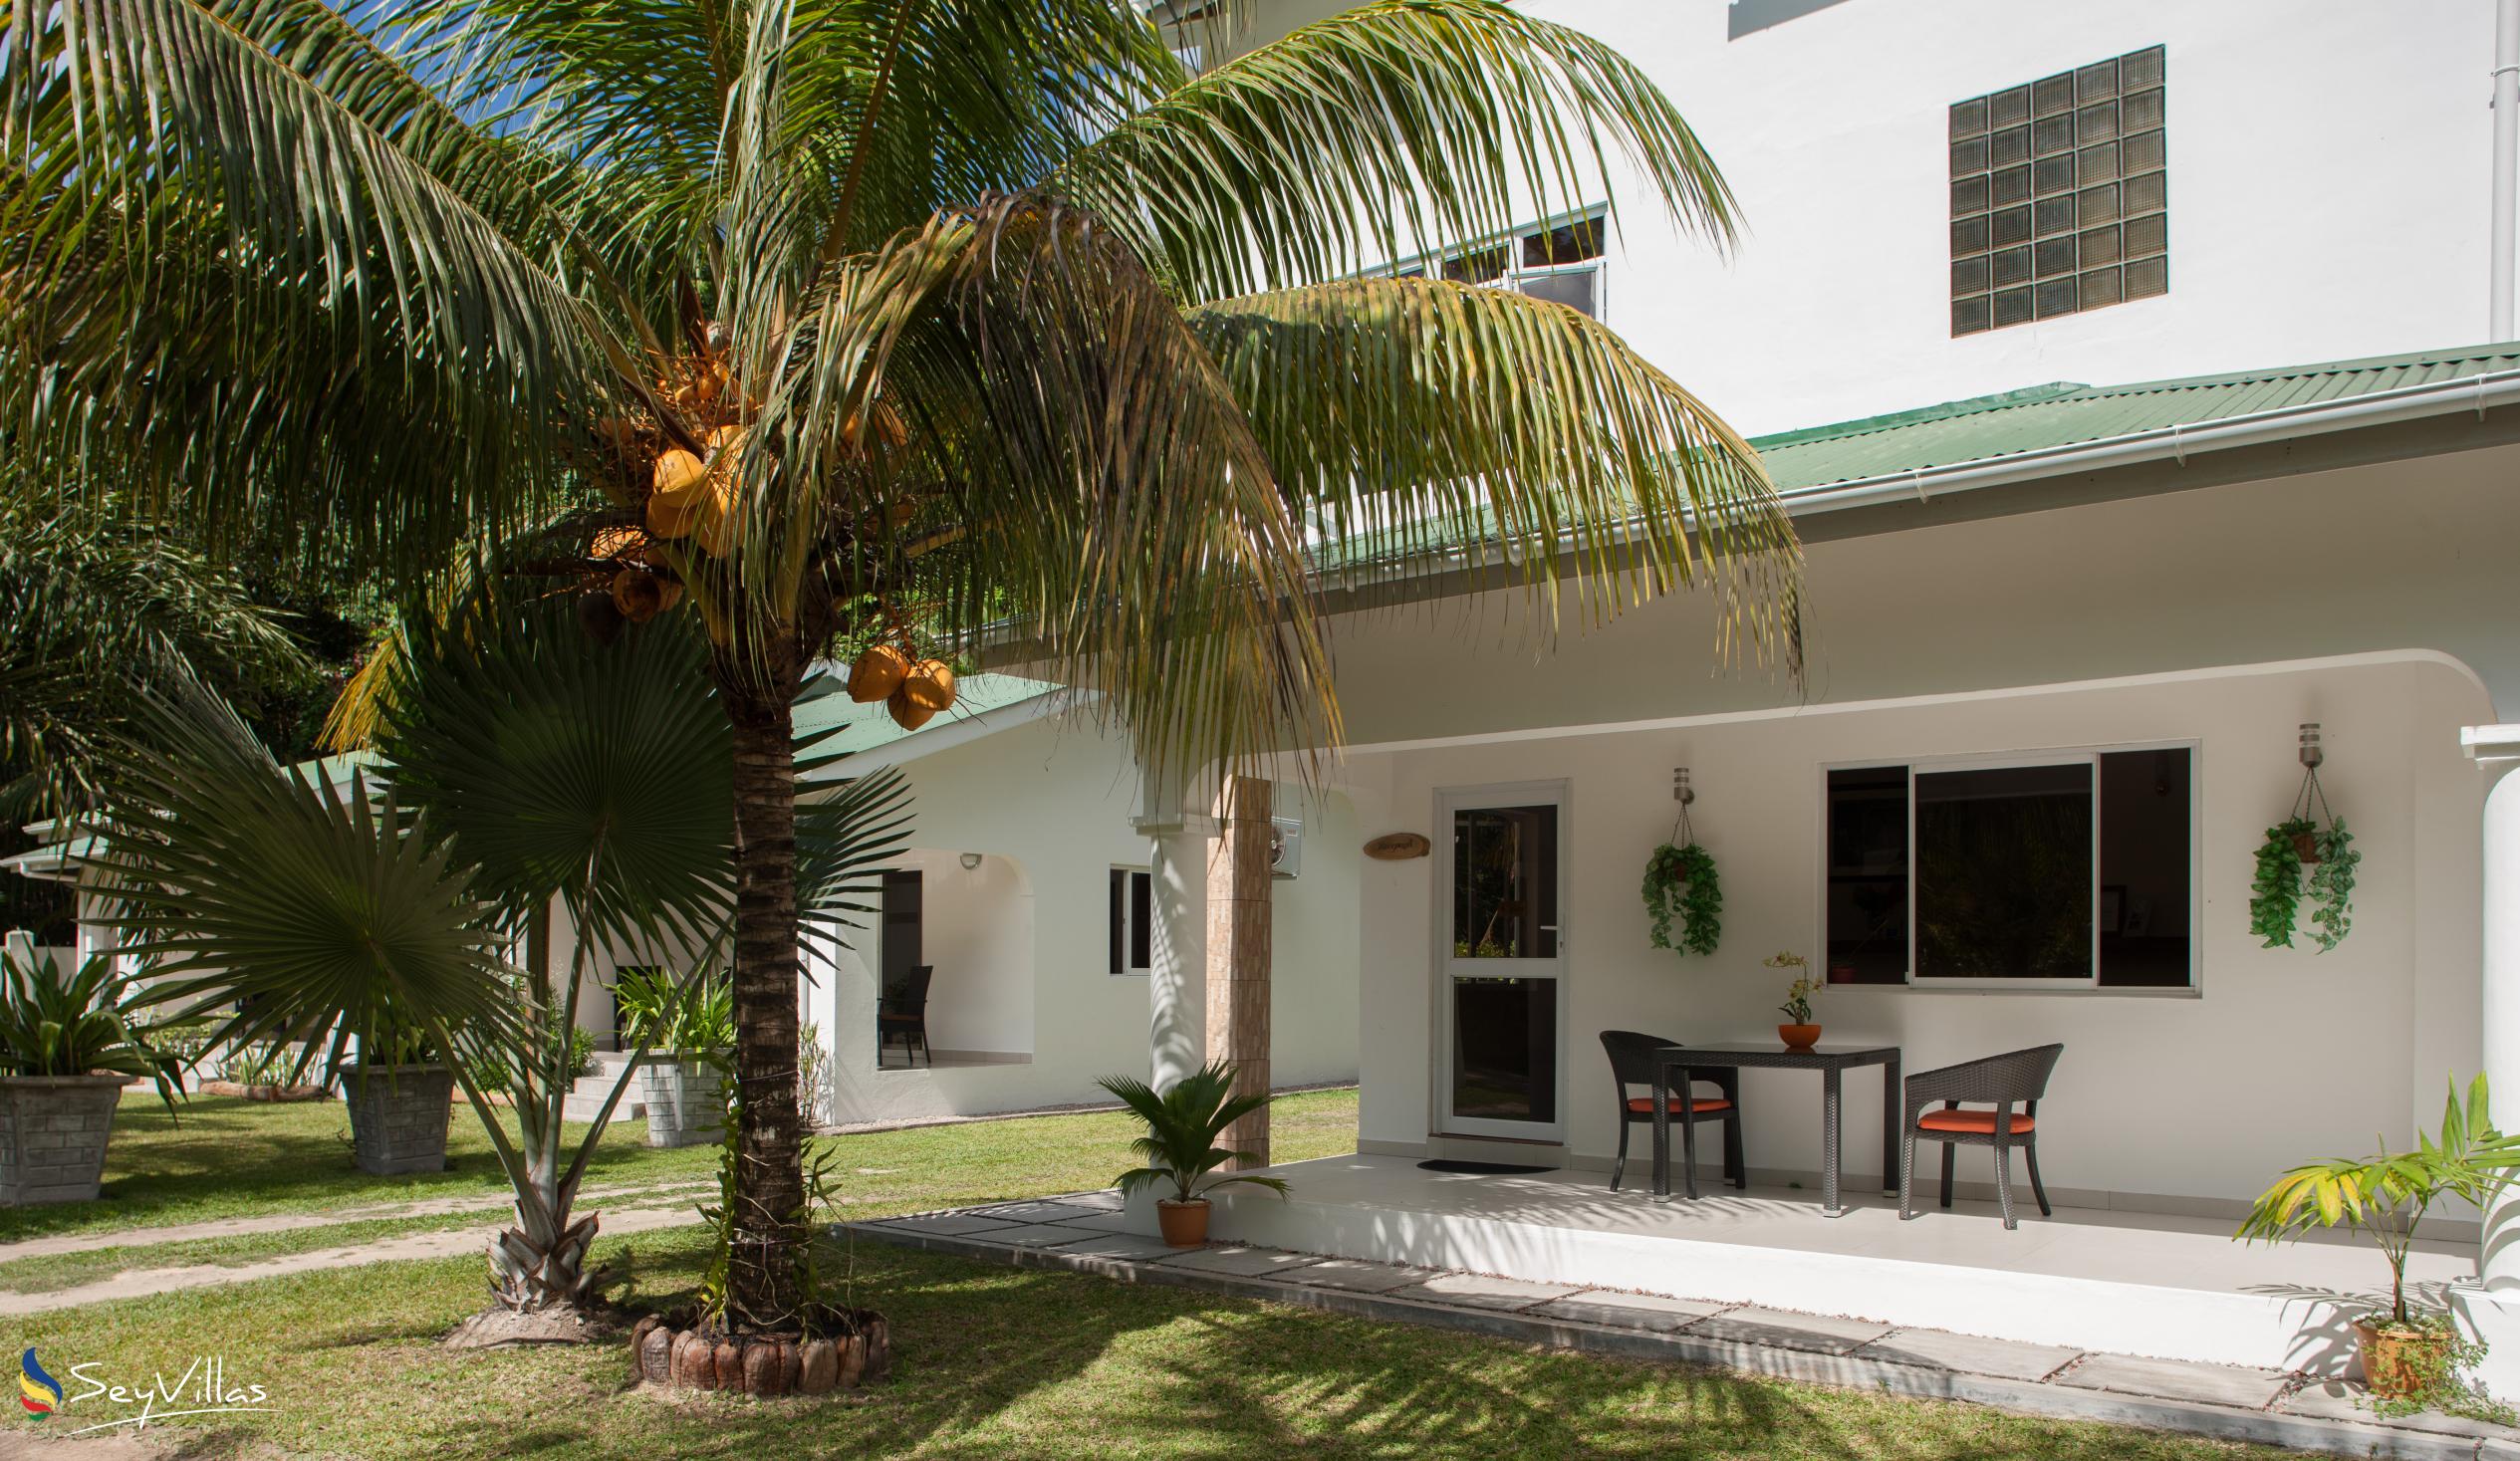 Foto 23: La Modestie Villa - Aussenbereich - Praslin (Seychellen)